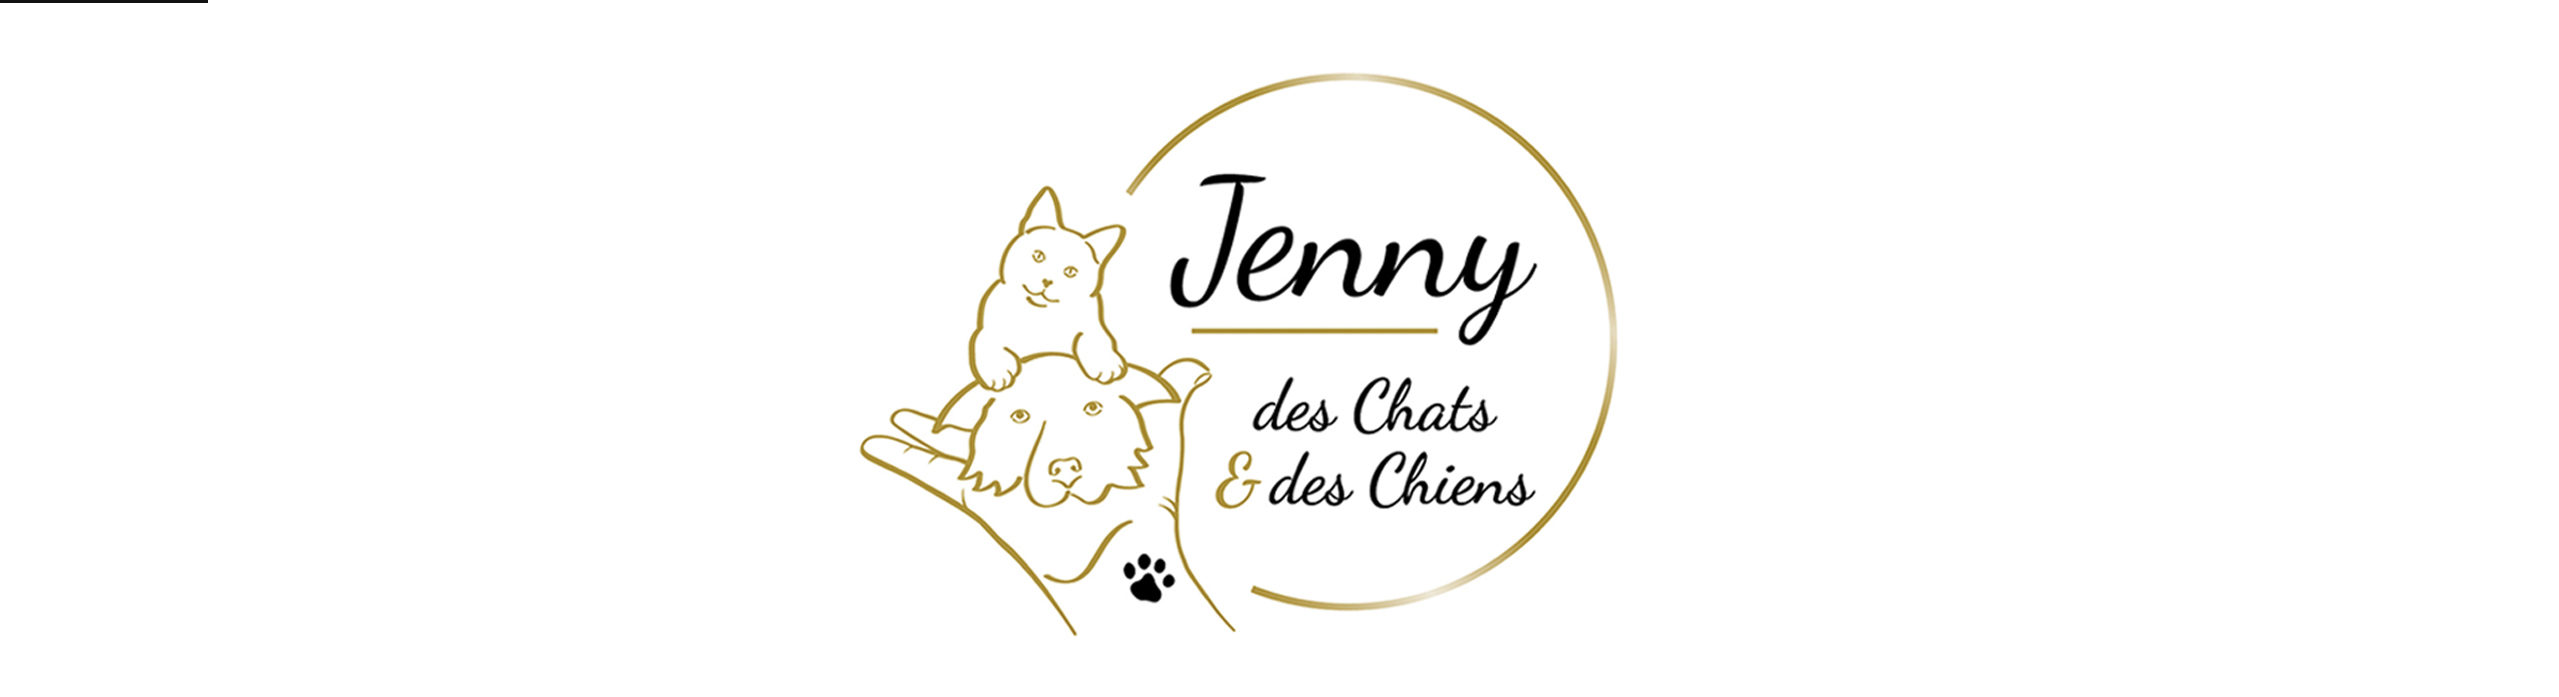 Jenny des chats et des chiens spécialiste relation chat humain